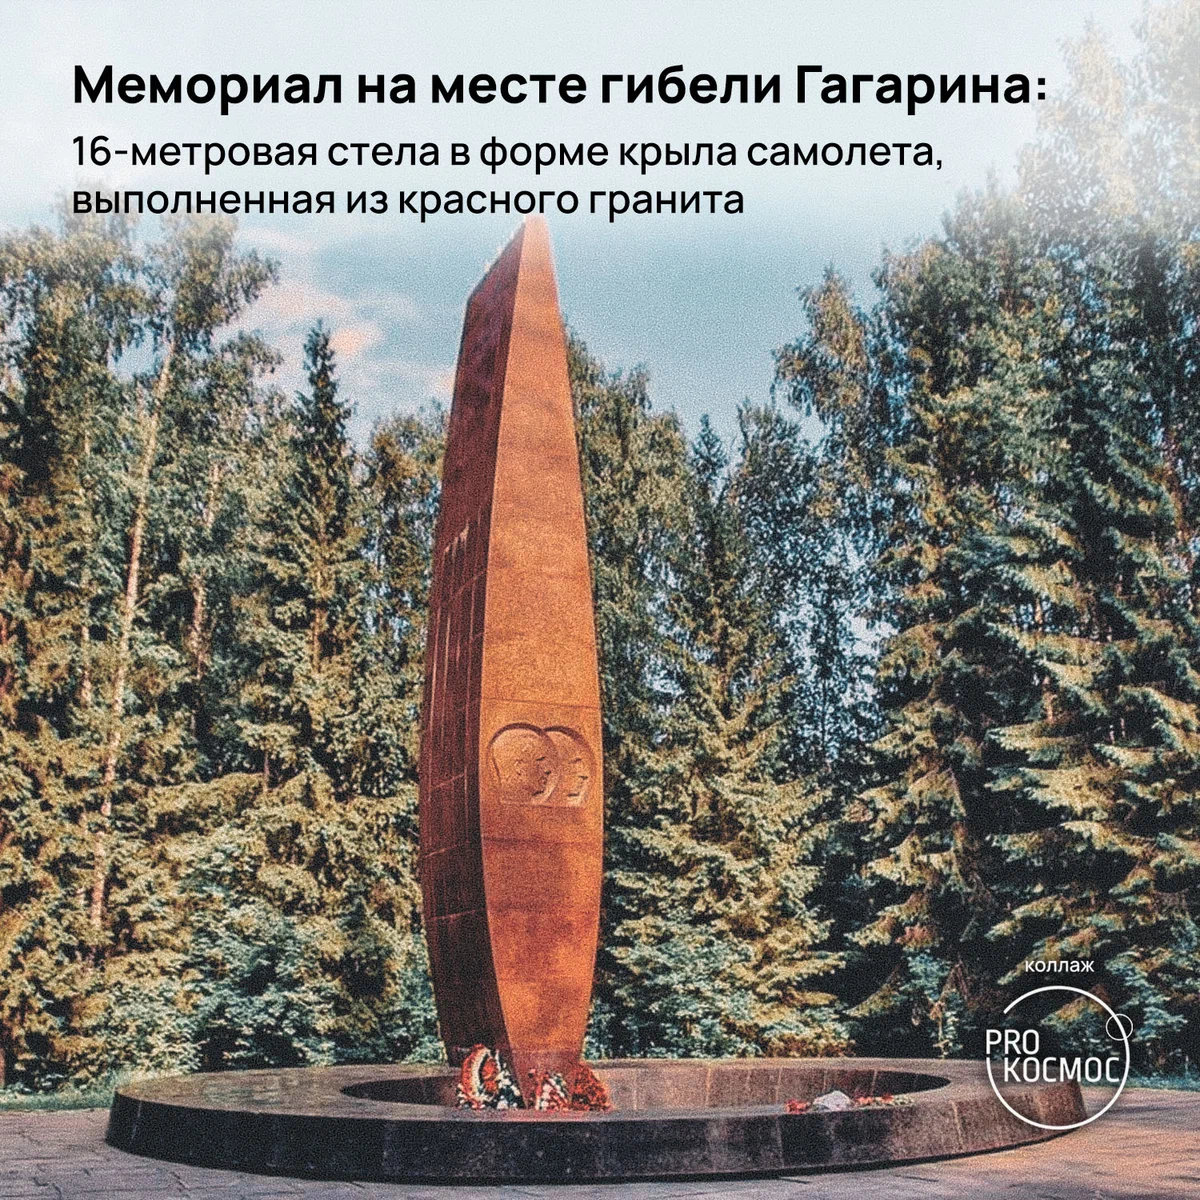 Мемориал на месте гибели Гагарина: 16-метровая стела в форме крыла самолета, выполненная из красного гранита⁠⁠ height=1200px width=1200px